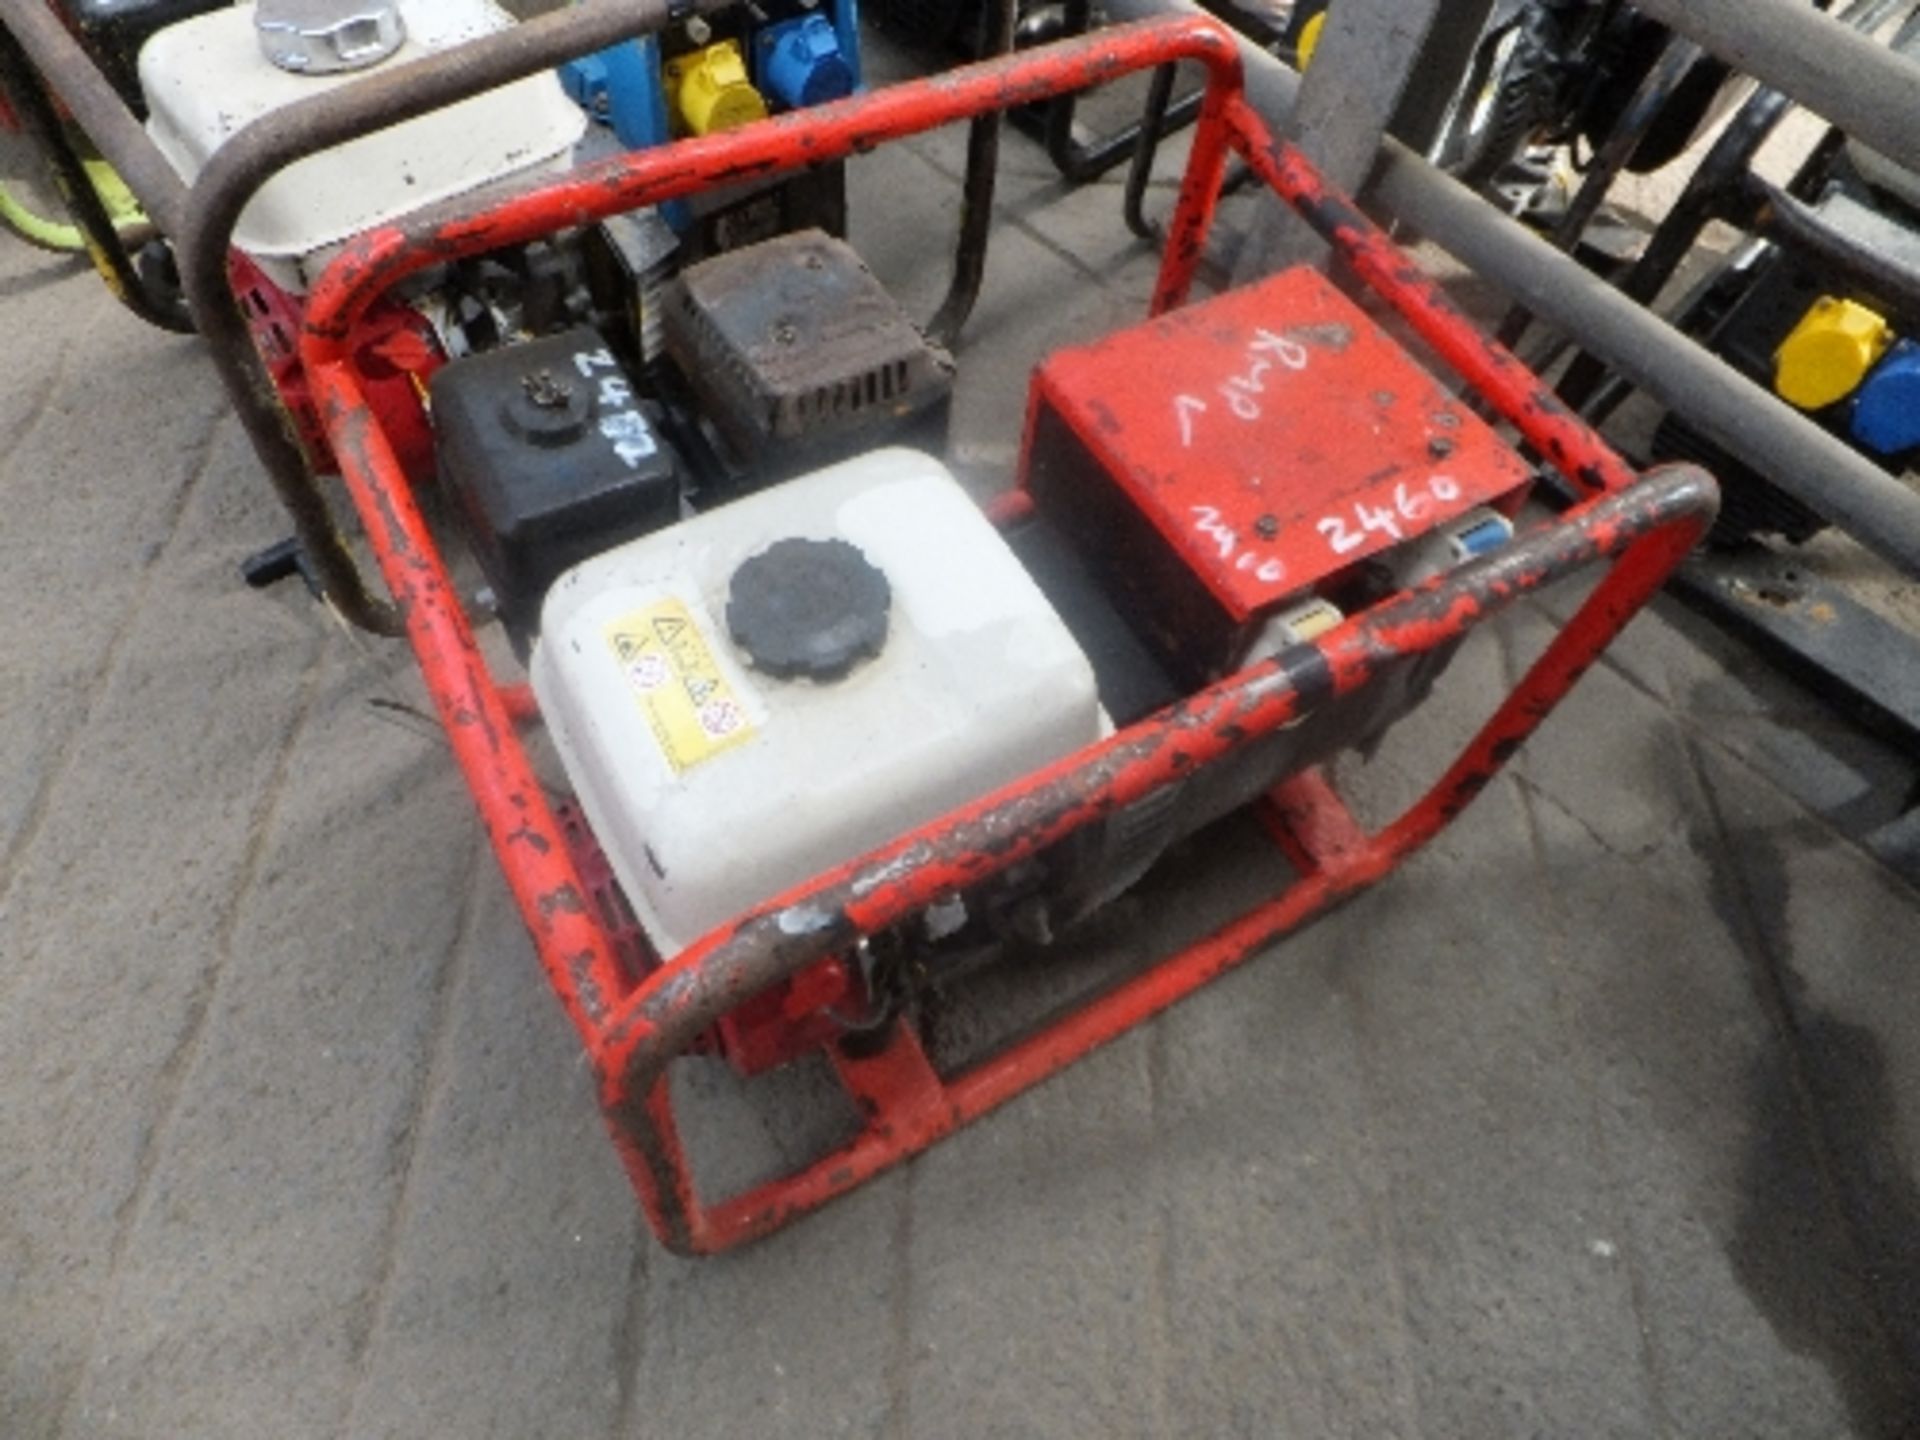 Honda petrol generator